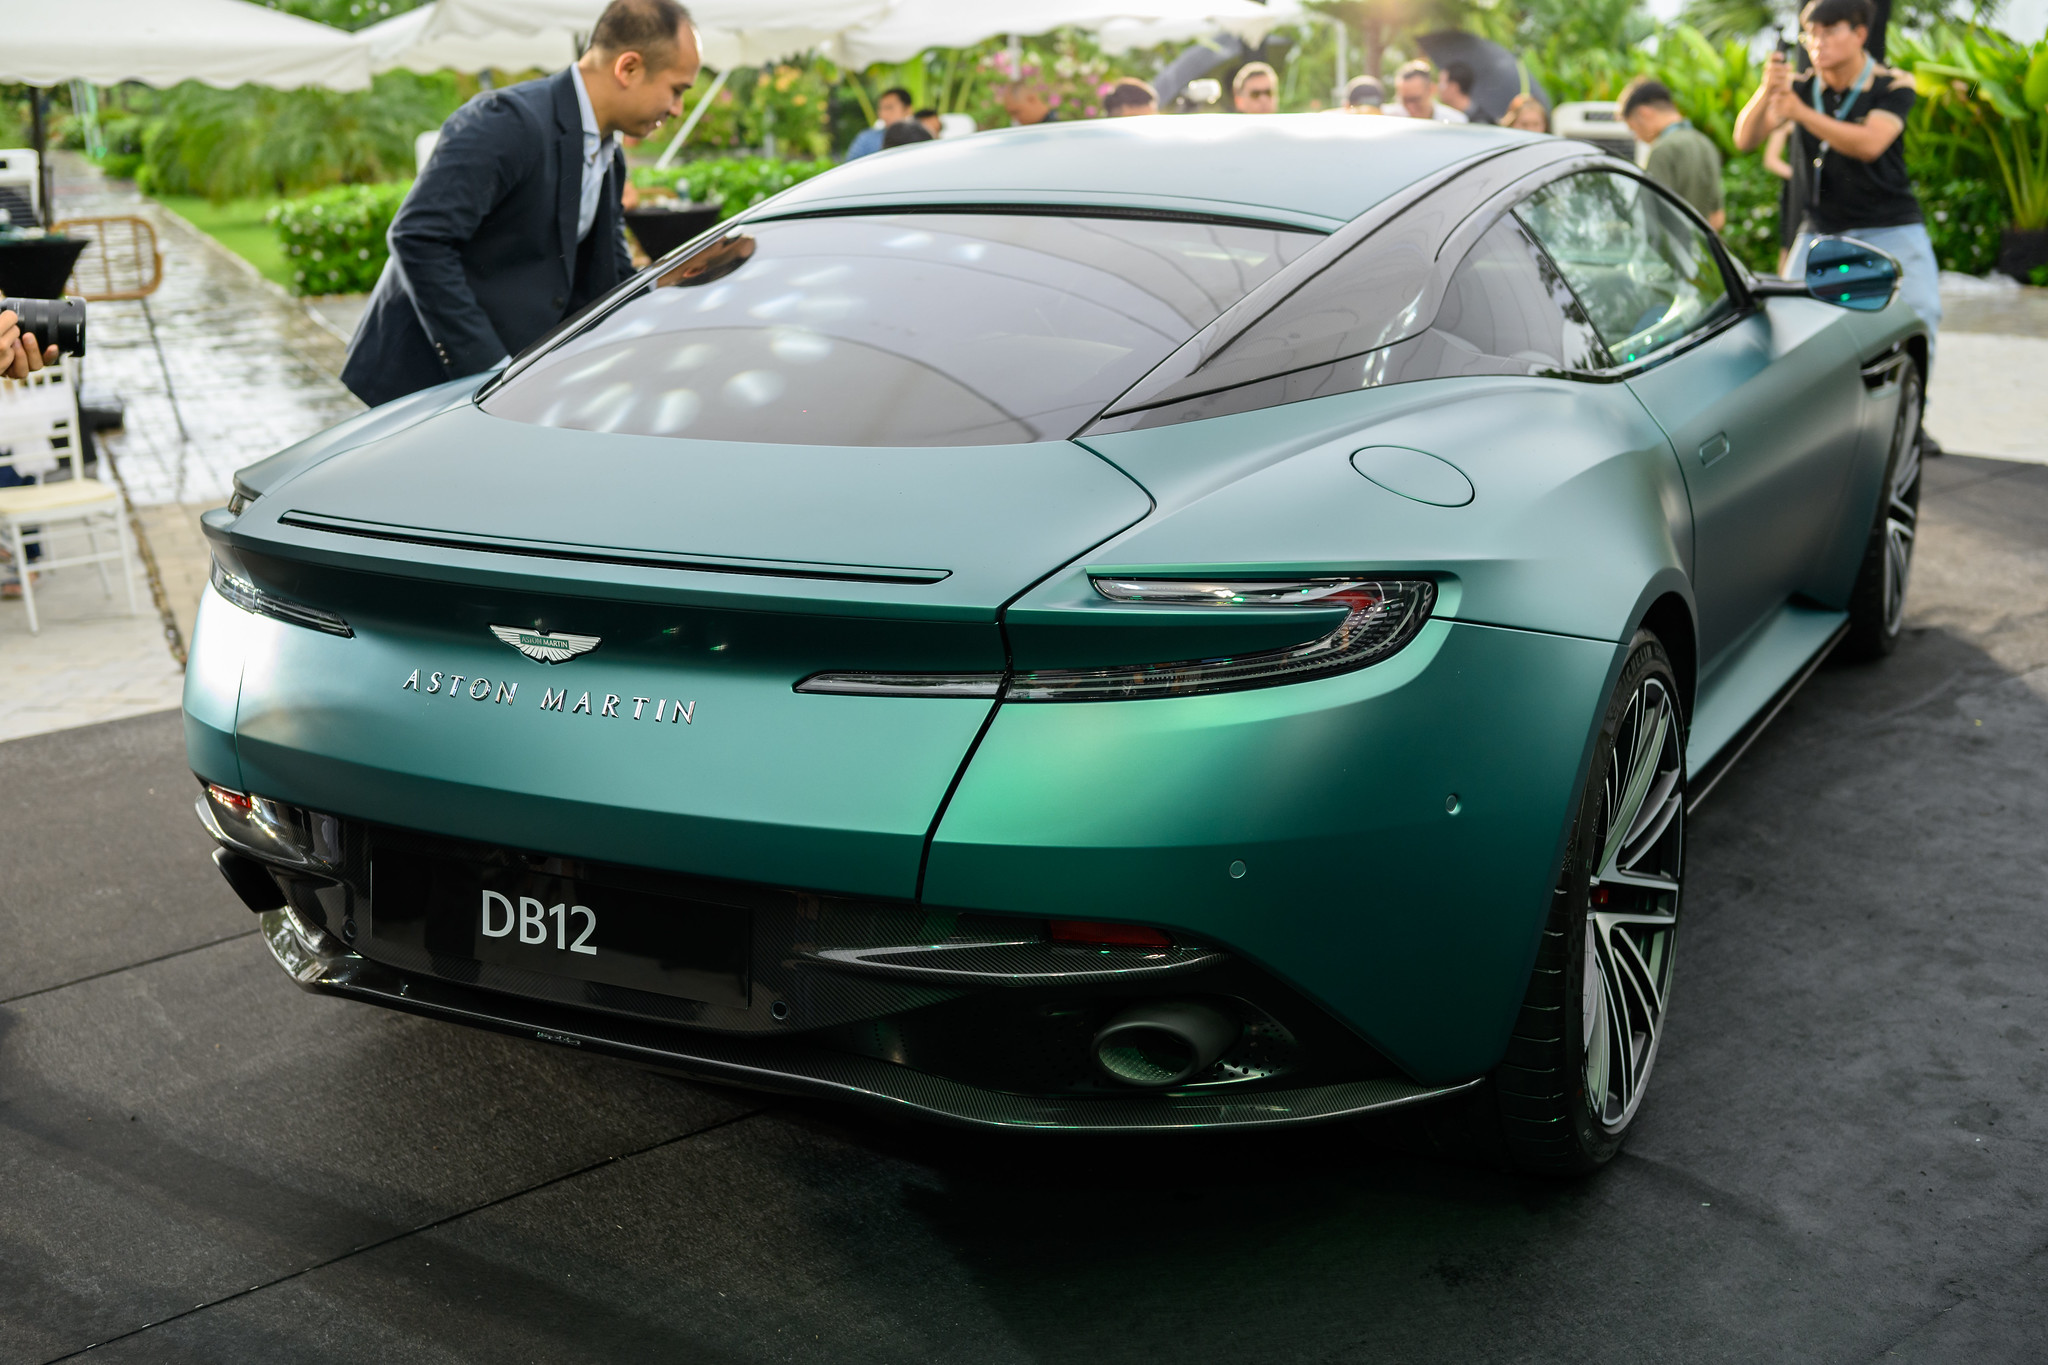 Siêu xe Aston Martin DB12 về Việt Nam, giá từ 19,5 tỉ đồng- Ảnh 2.